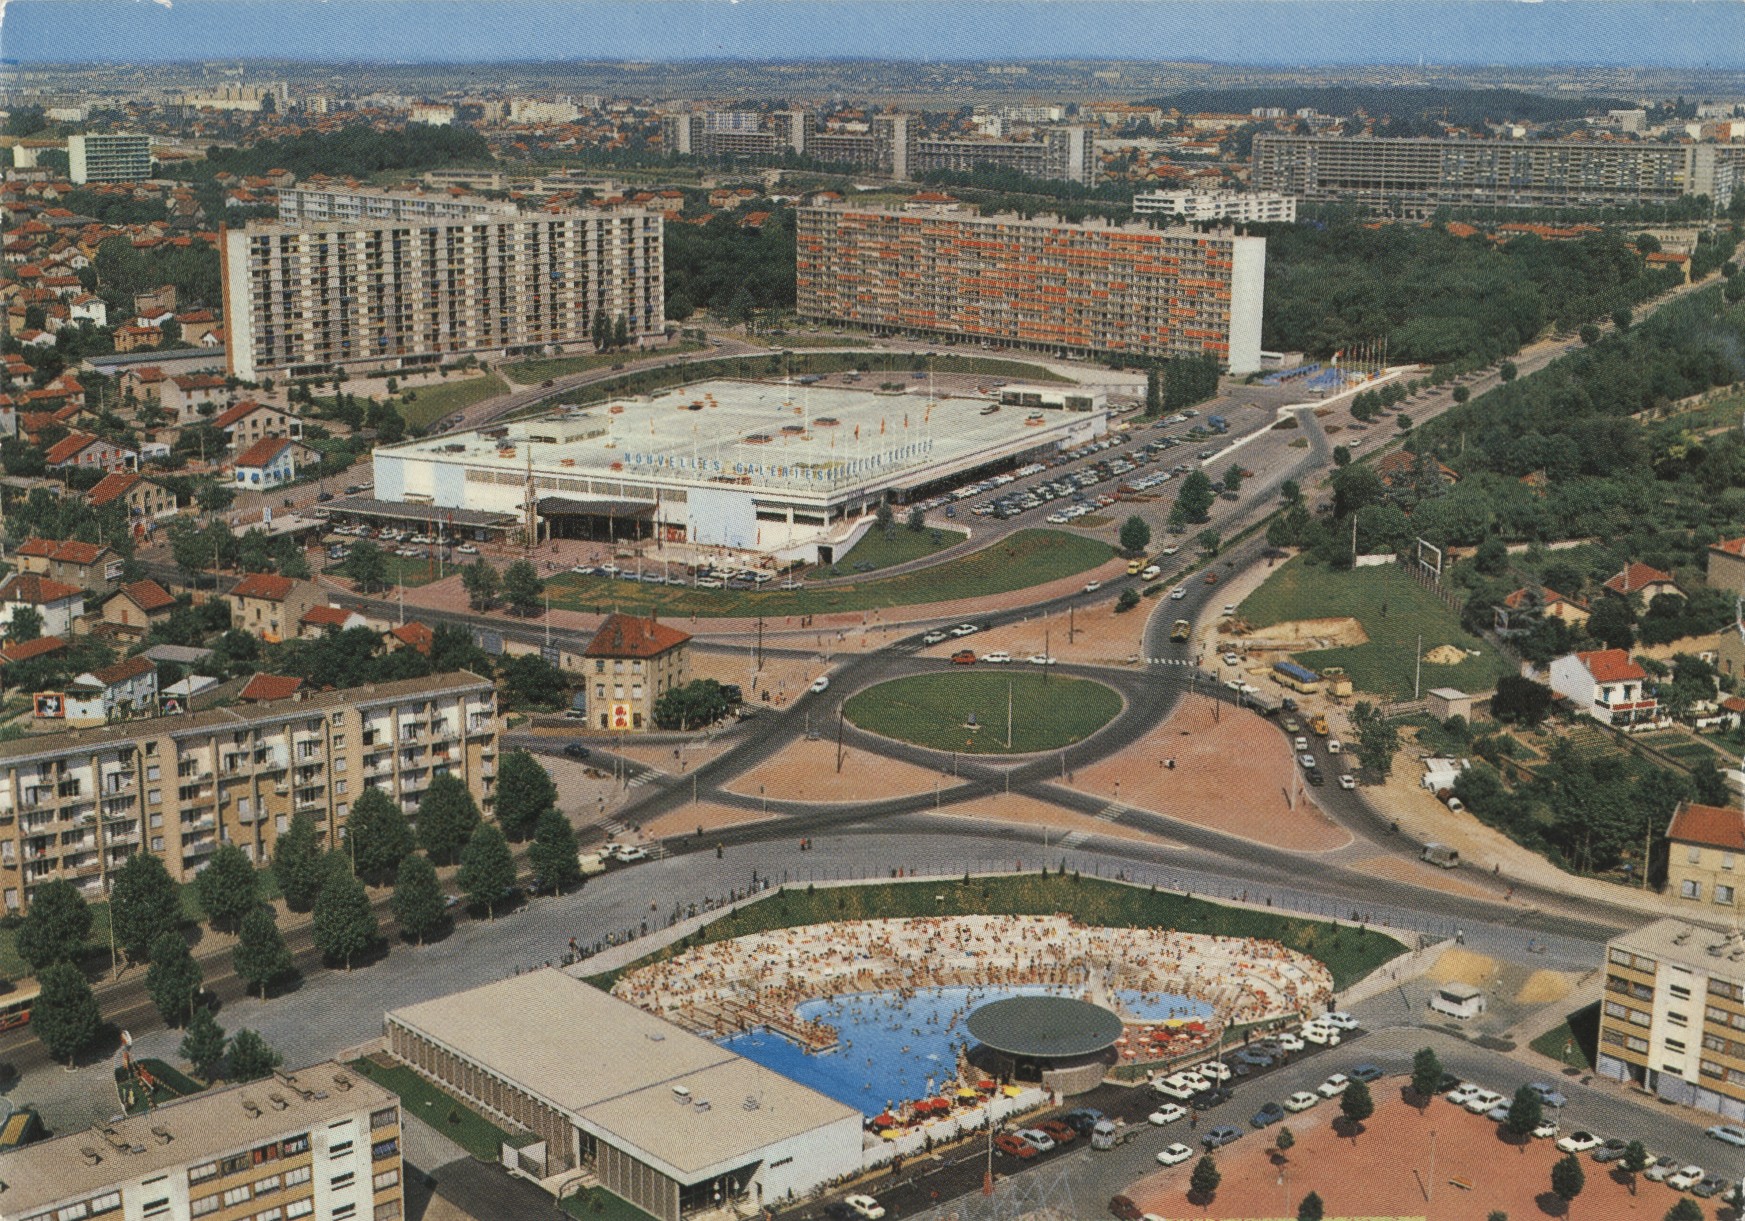 Lyon - Au premier plan : piscine Mermoz , en second plan, les nouvelles galeries et Bron Parilly : carte postale couleur (vers 1960, cote : 4FI/5603, repro. commerciale interdite)